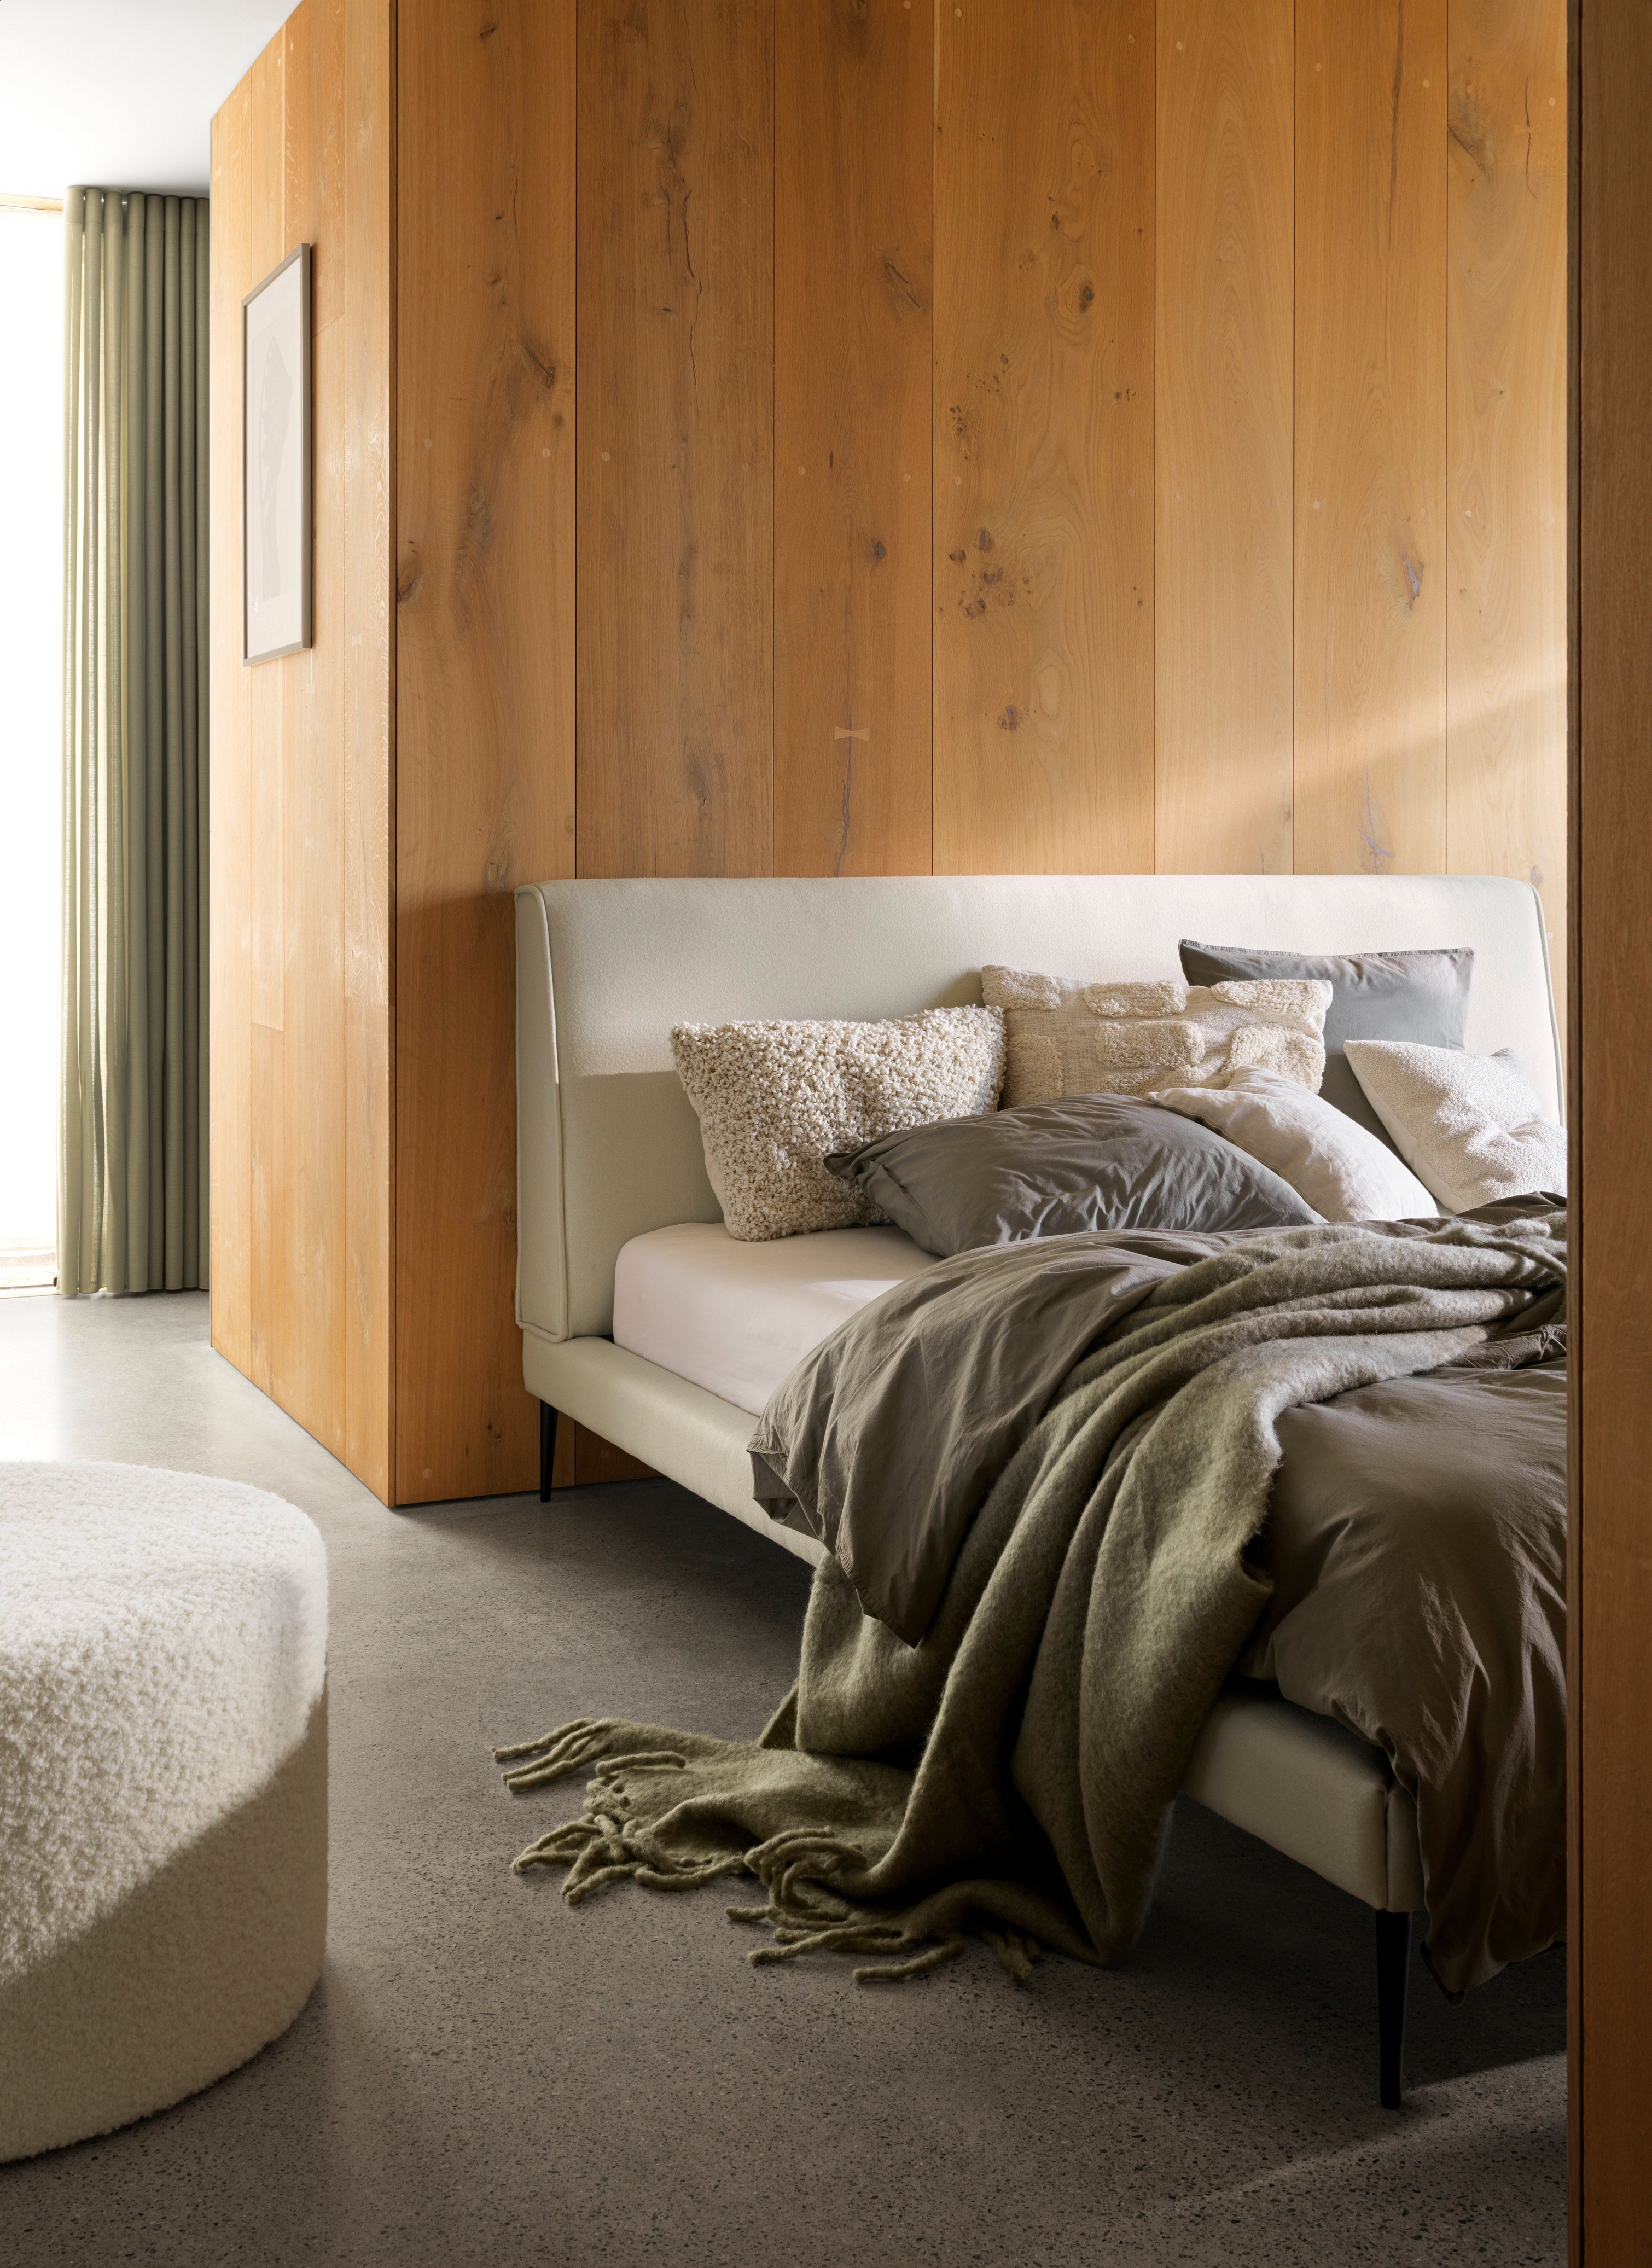 Gemütliches Bett mit weichen Decken und Kissen an einer Holzwand unter sanfter Beleuchtung.